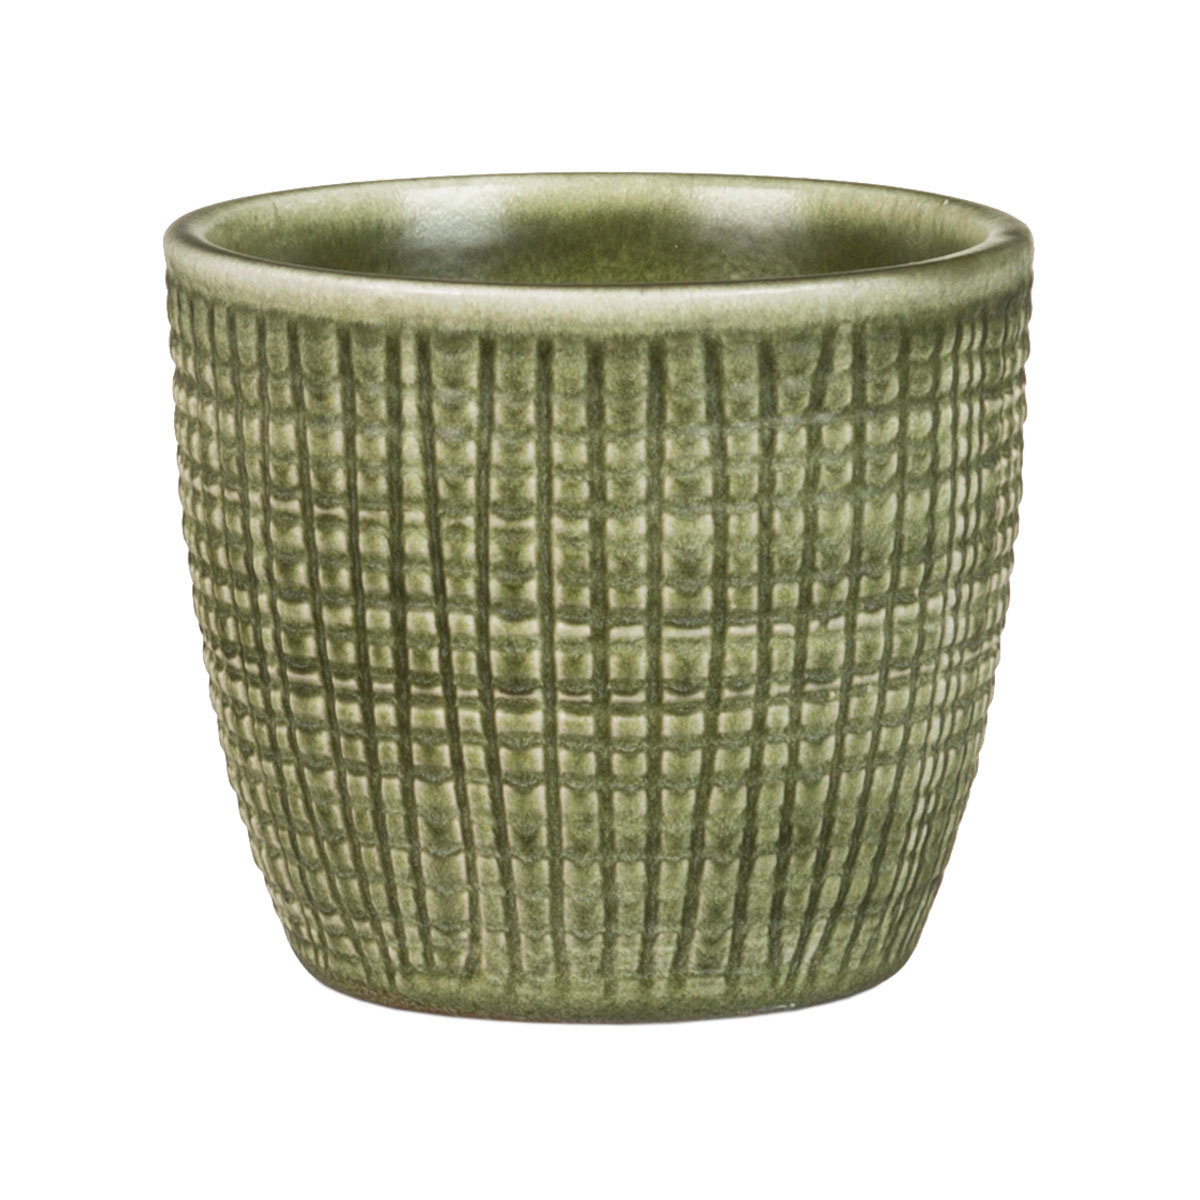 3er-Set Keramik-Übertöpfe 6cm, Grün
| #2